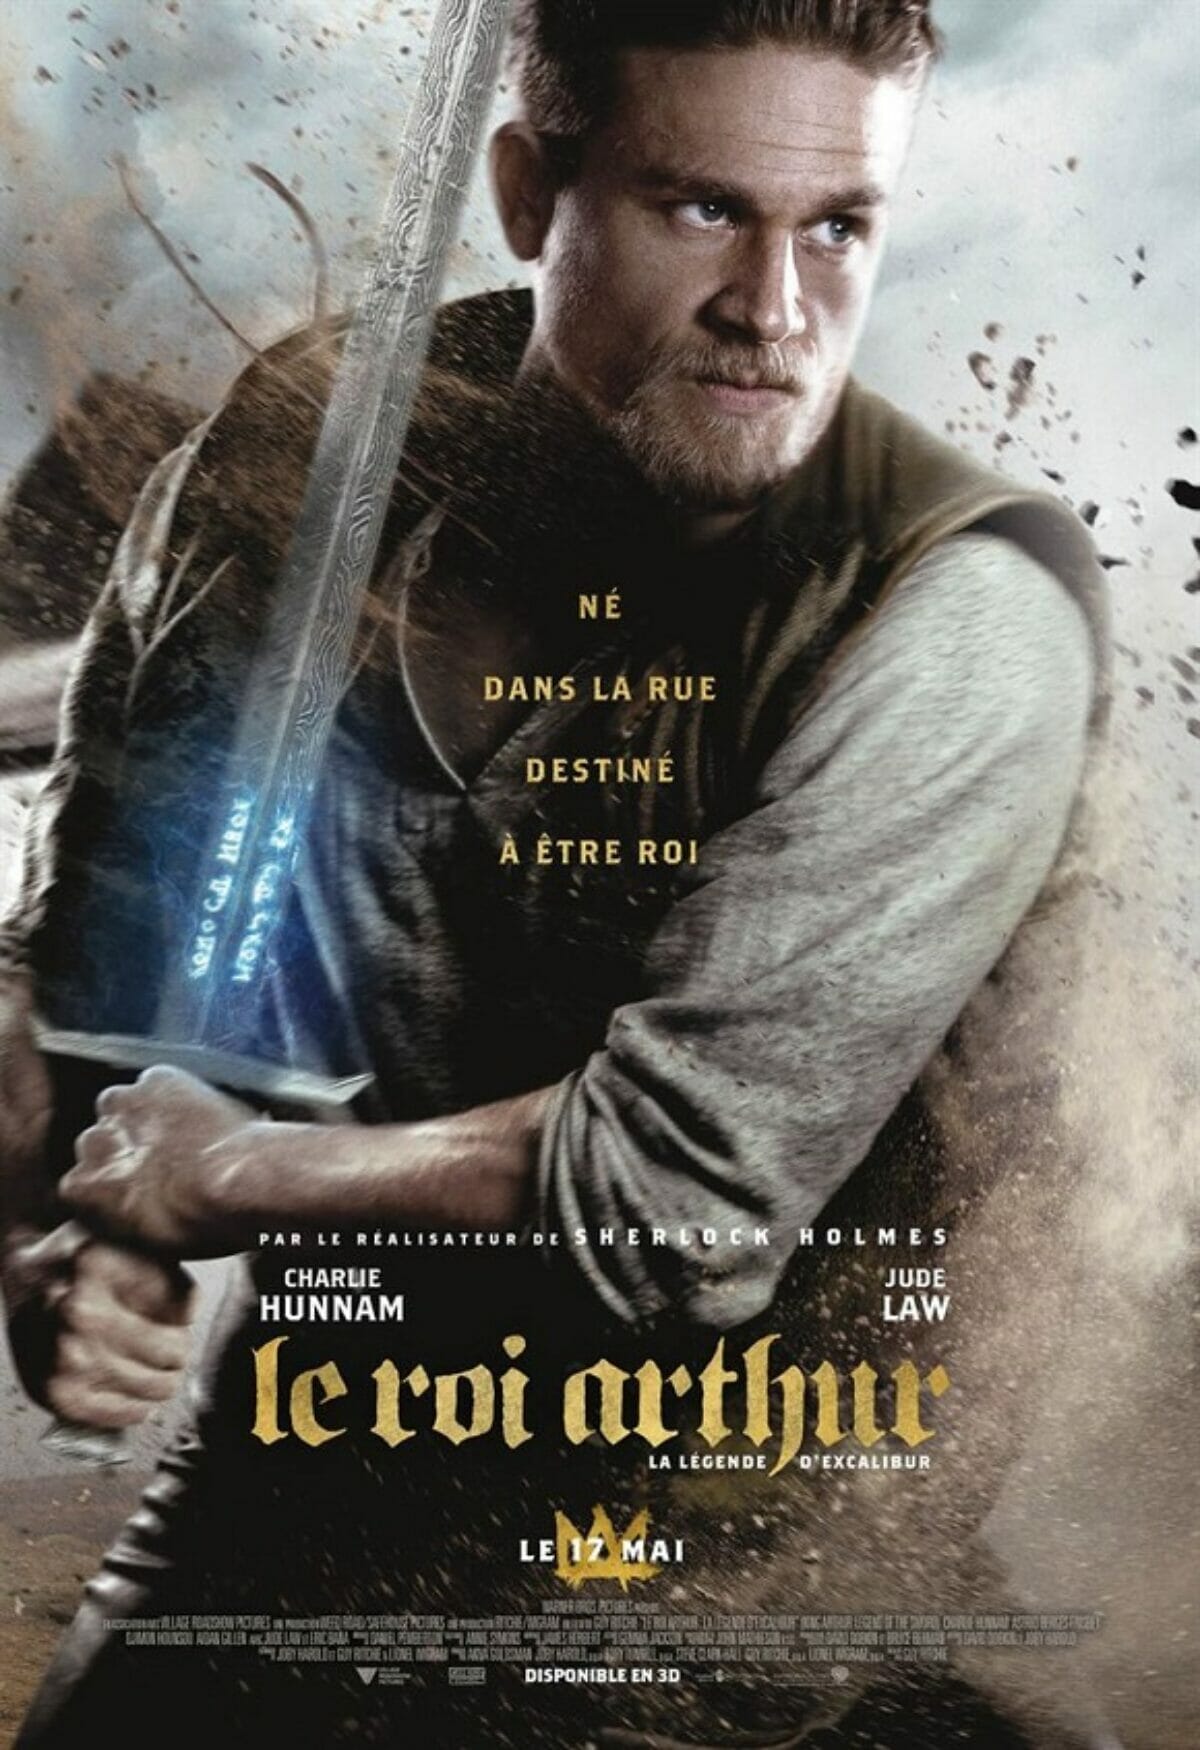 Le-Roi-Arthur-la-légende-d'excalibur